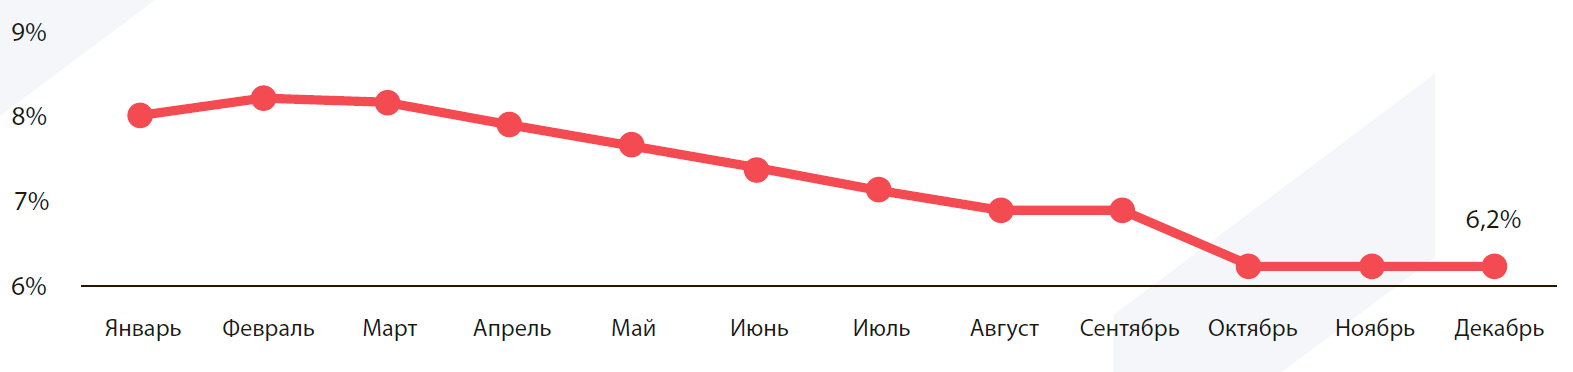 Доходность облигаций государственного займа России в 2019 году, %